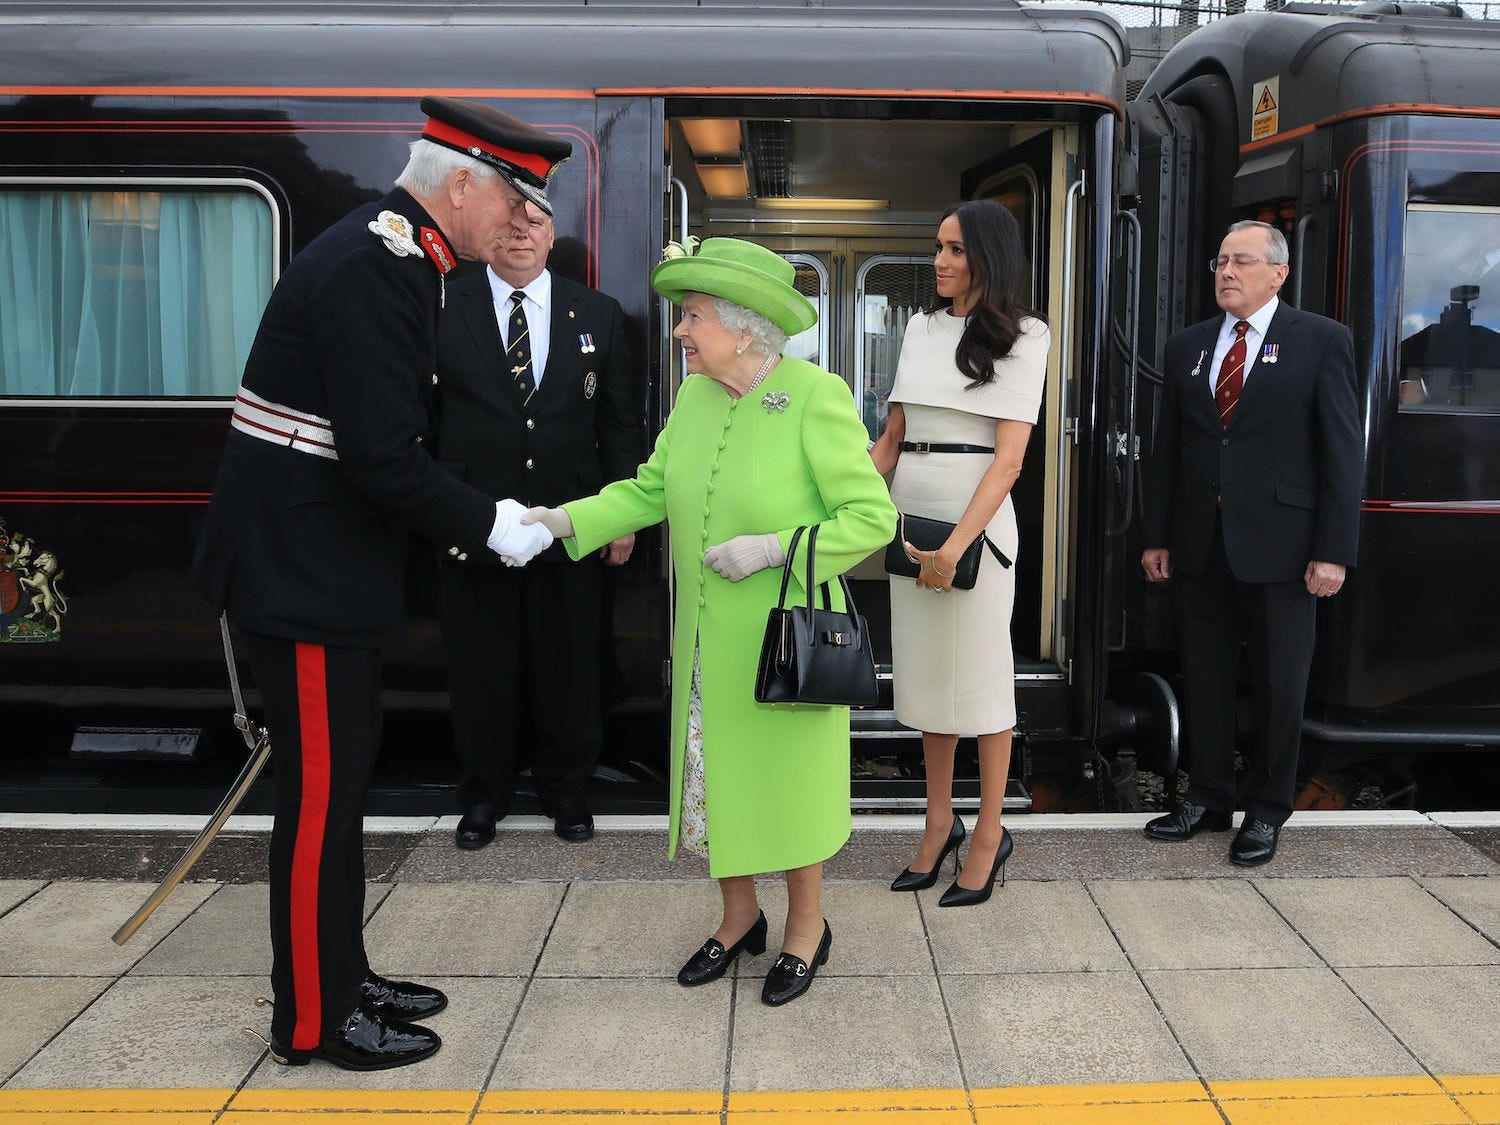 Königin Elizabeth II. wird mit Meghan Markle, Herzogin von Sussex, begrüßt, als sie 2018 mit dem Royal Train am Bahnhof Runcorn in Cheshire, England, ankommen.